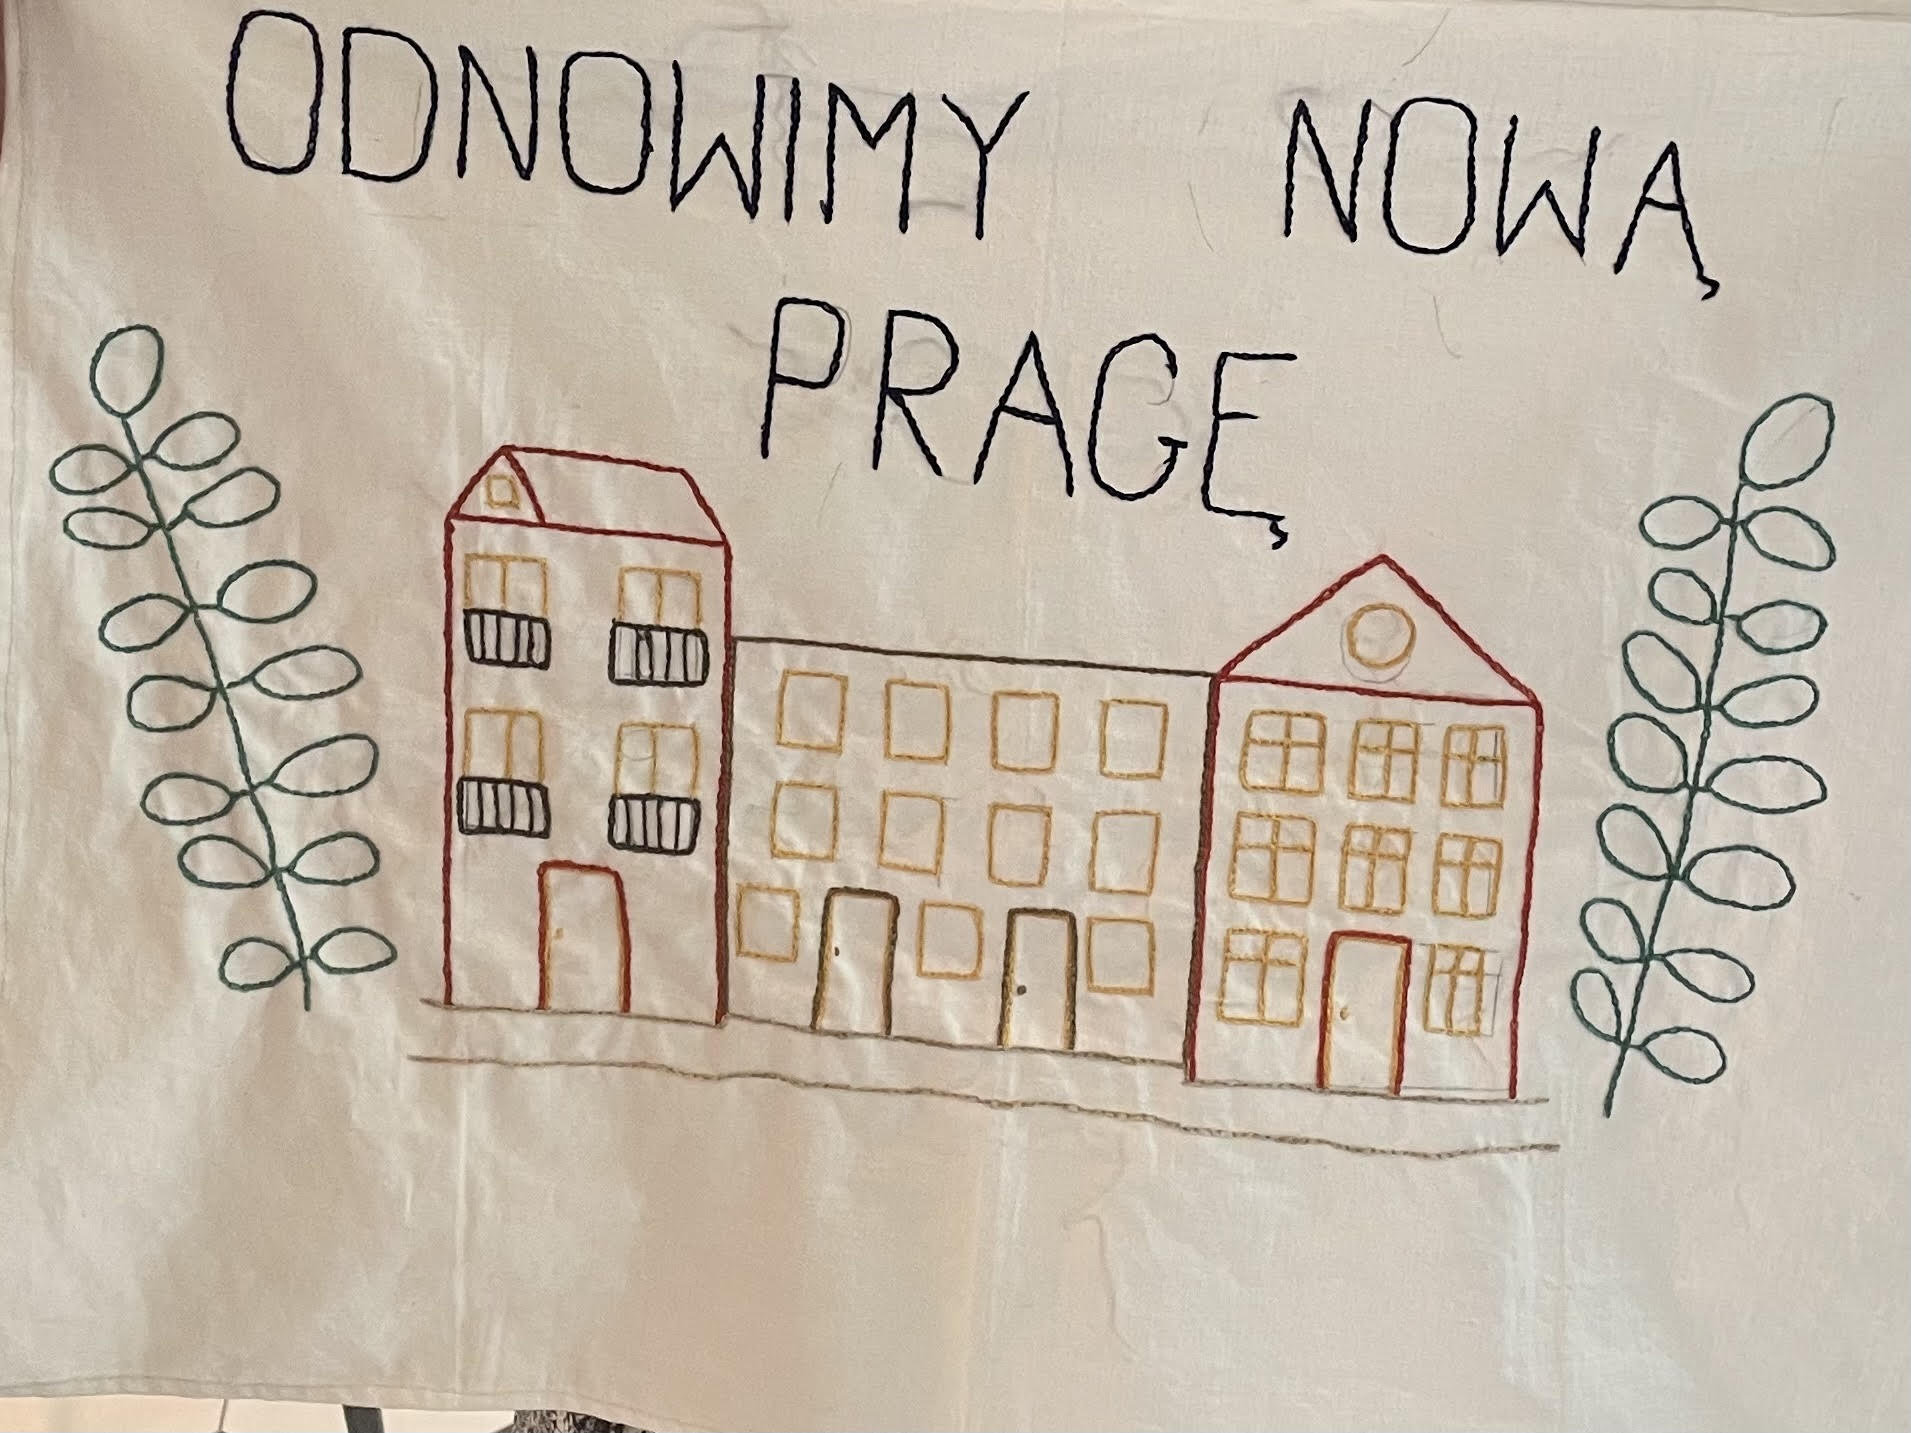 Zdjęcie przedstawia wyhaftowany rysunek budynku i napis odnowimy nową Pragę.